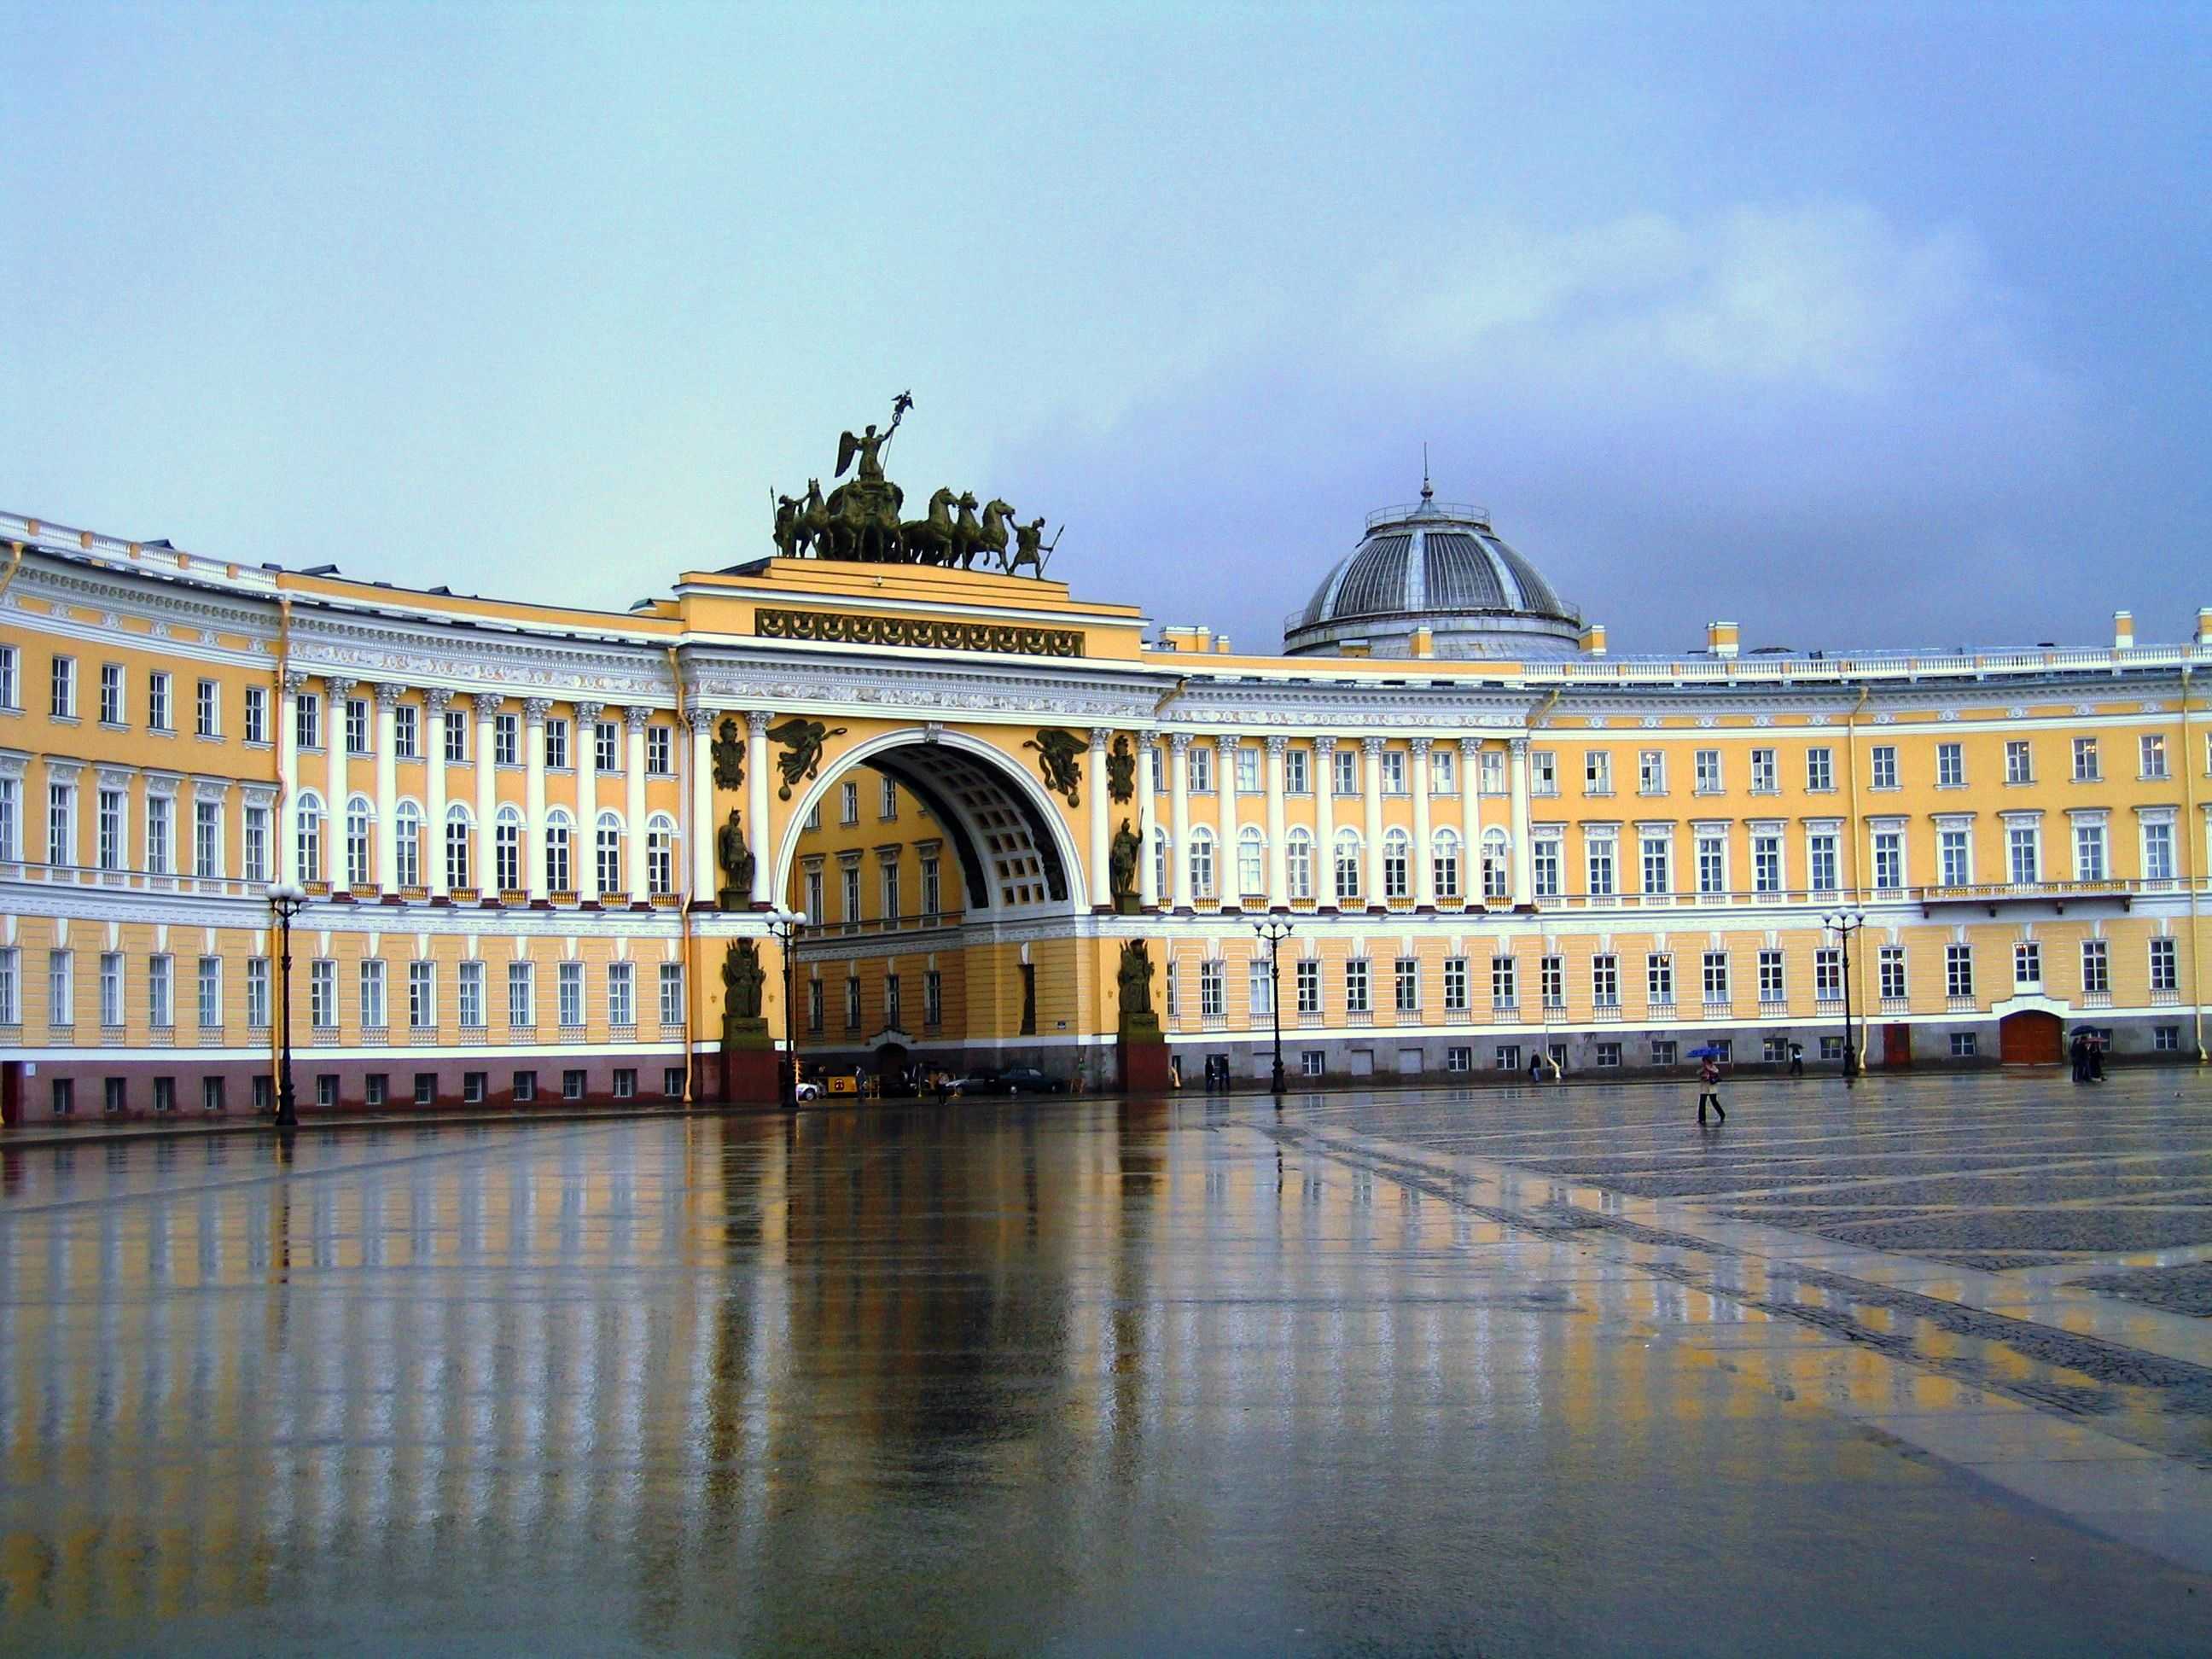 Здание Главного штаба - историческое величественное здание, расположенное на центральной площади Санкт-Петербурга Центральной и самой яркой частью здания Главного штаба является арка Главного штаба